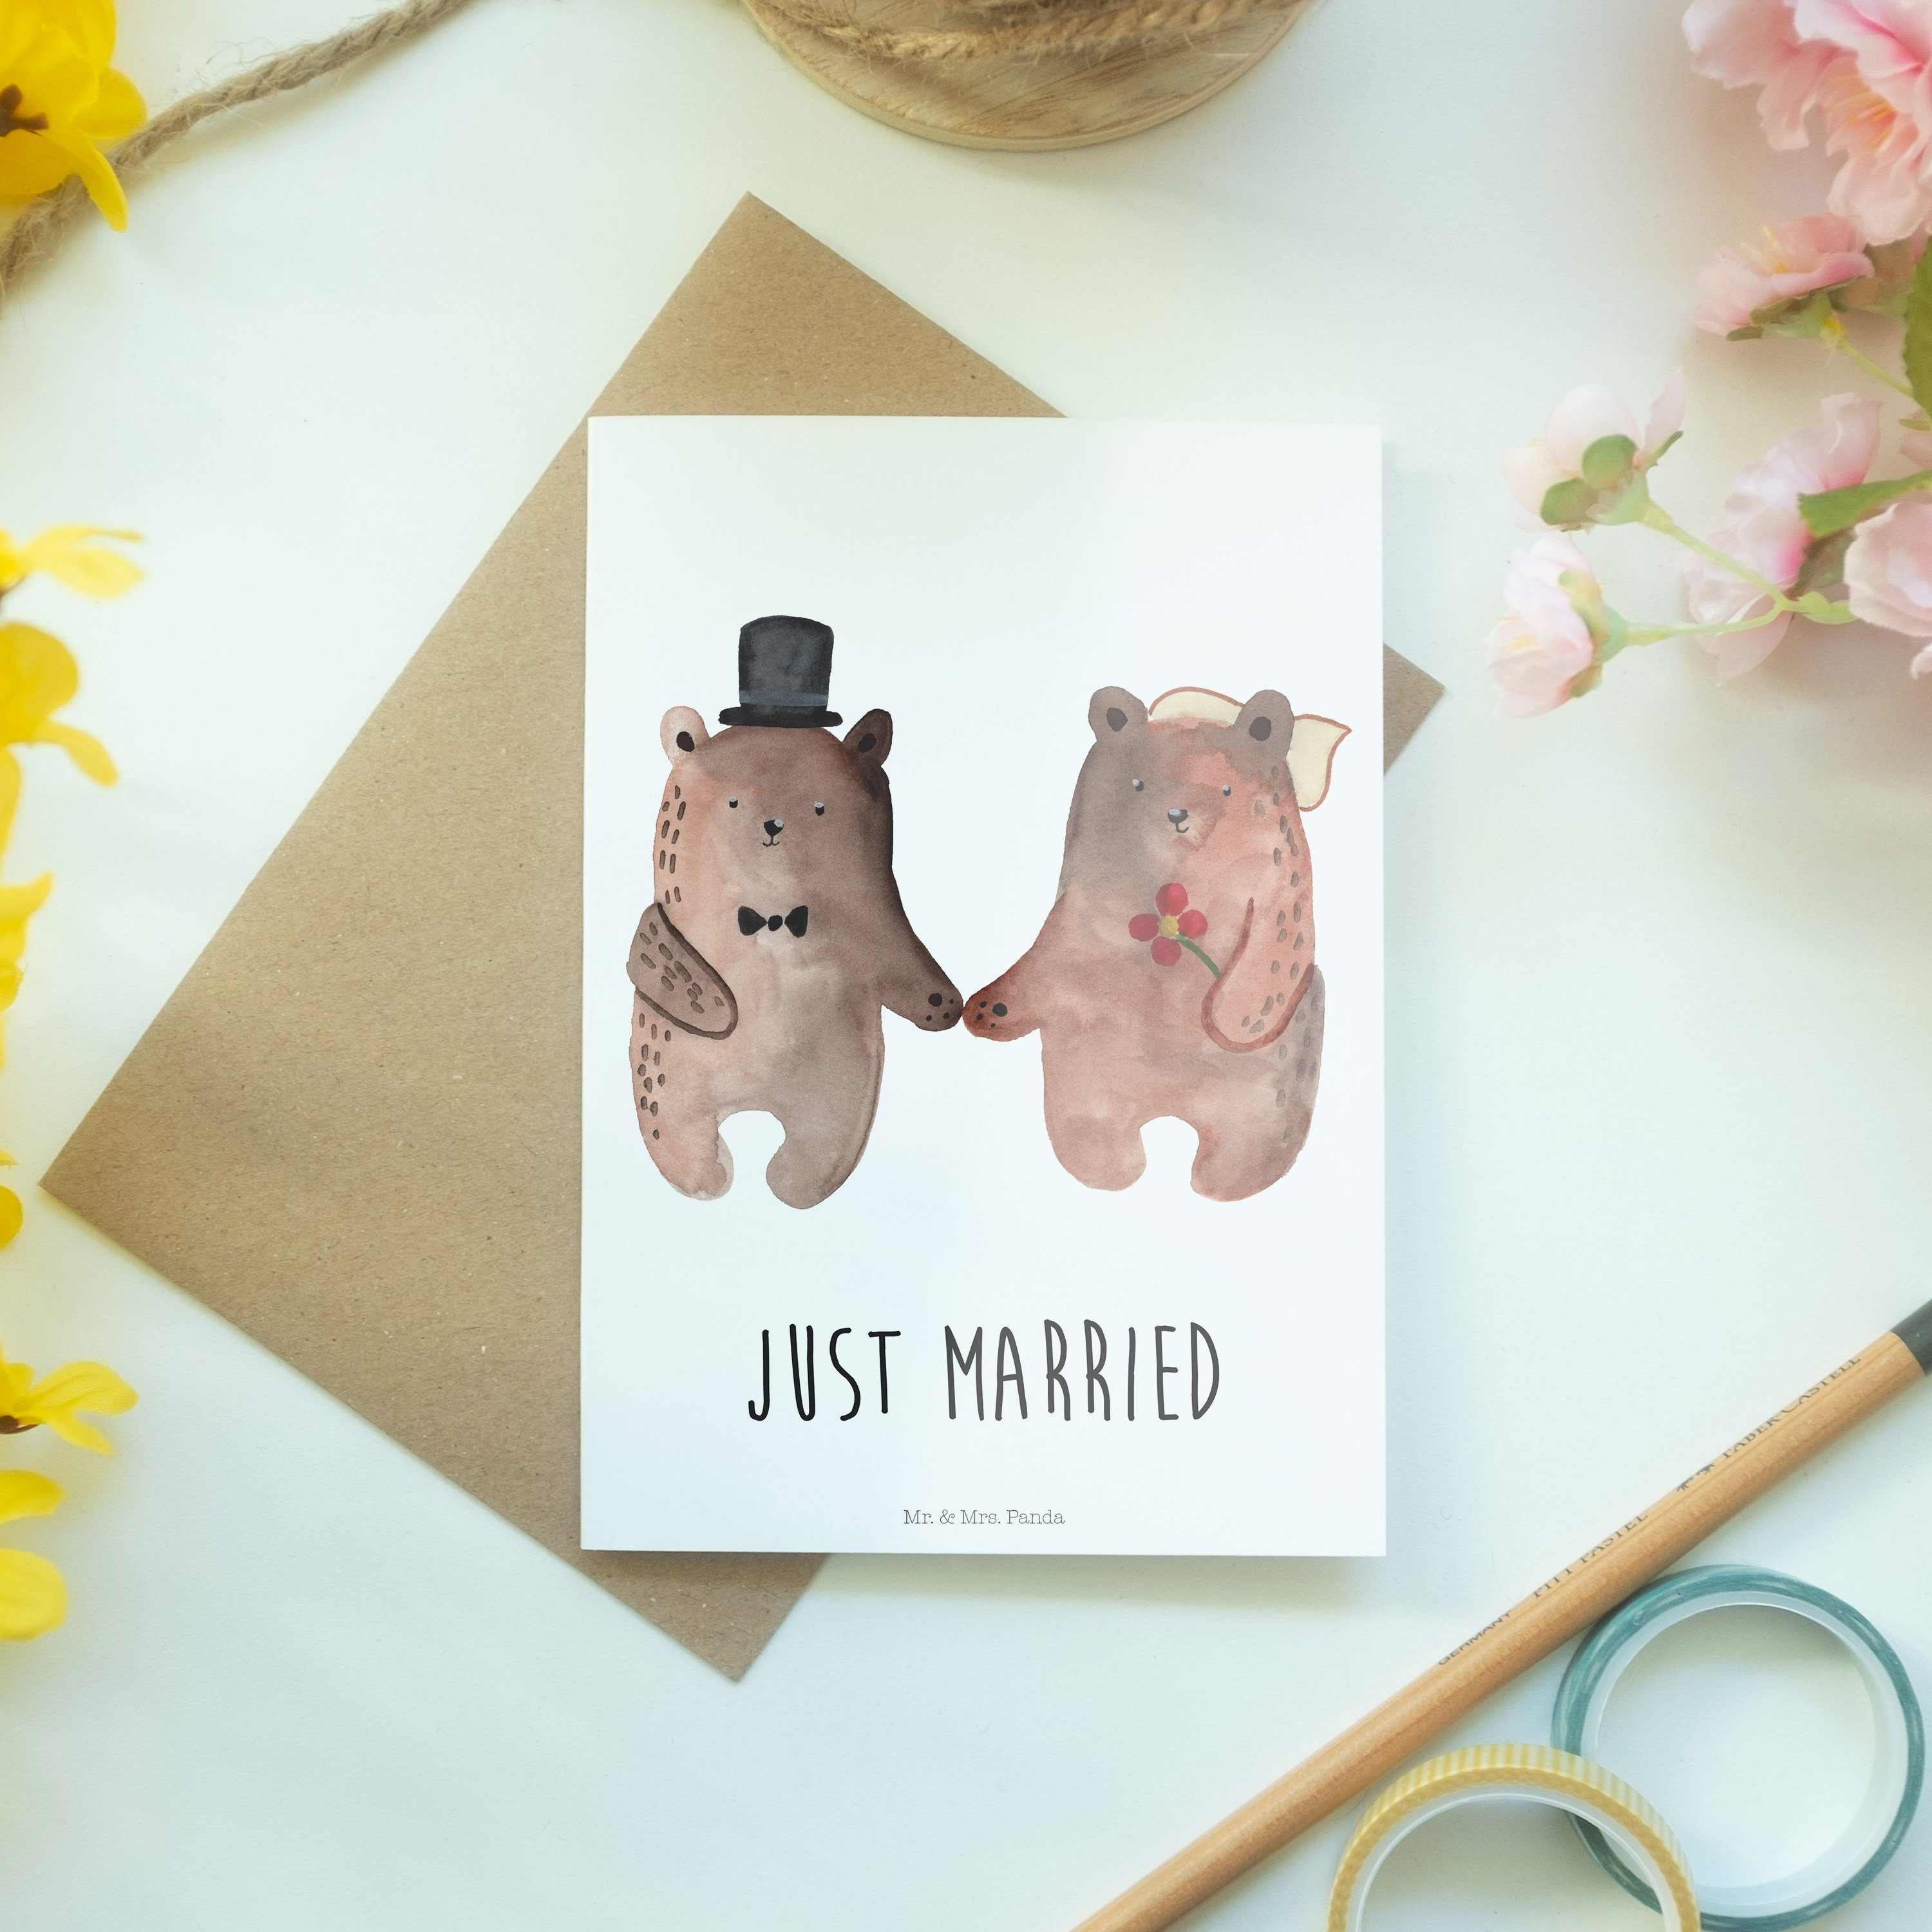 Grußkarte Bär Heirat Heirat & Bär Weiß Geschenk, - Heirate Mr. Mrs. - Hochzeit Panda Verheiratet